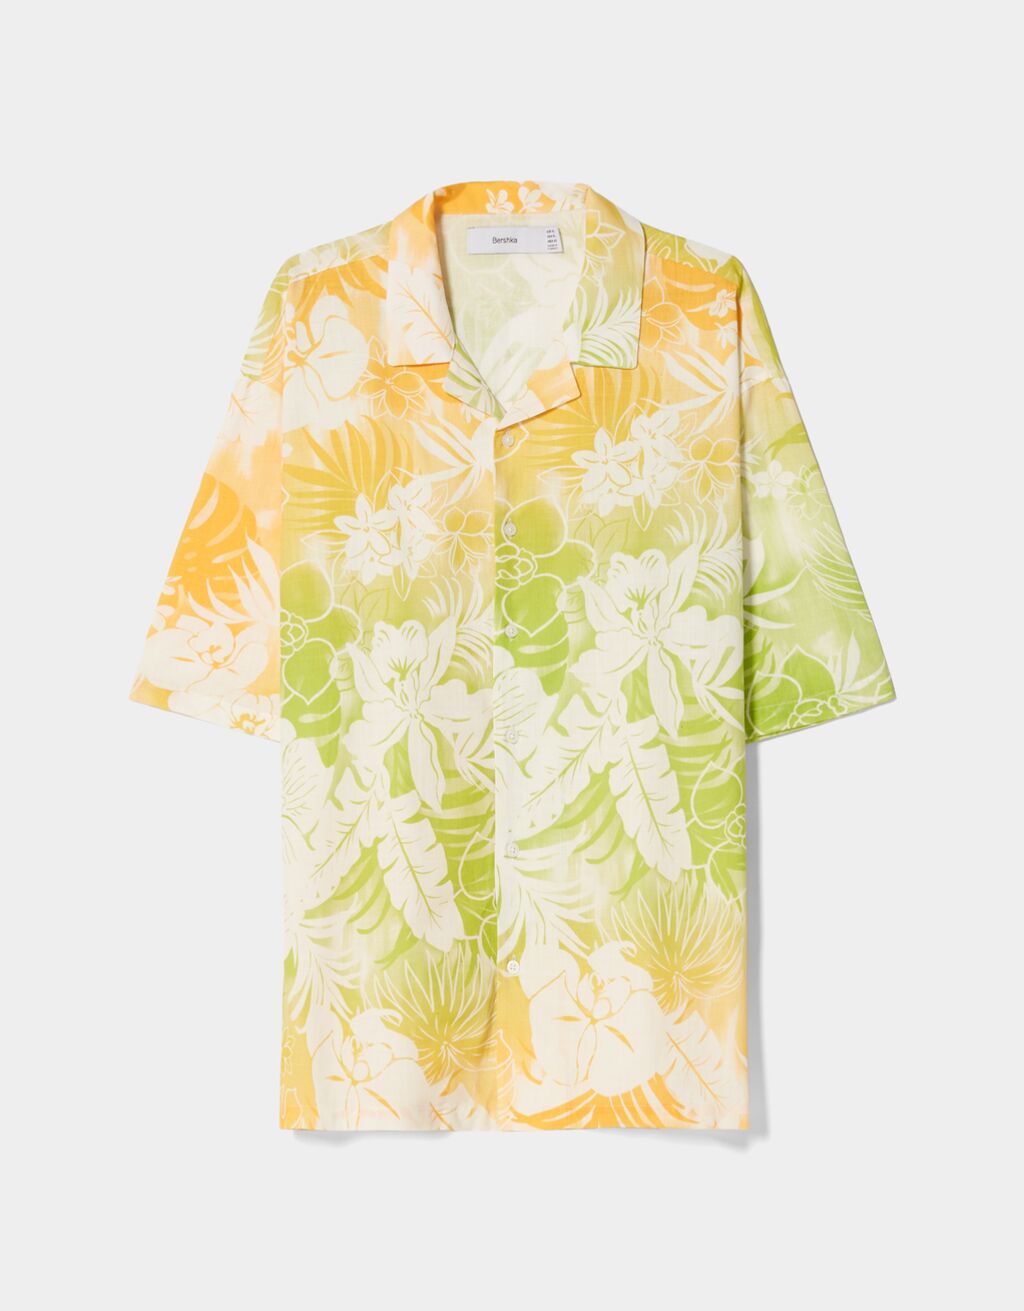 Camisa màniga curta relaxed fit cotó textura floral